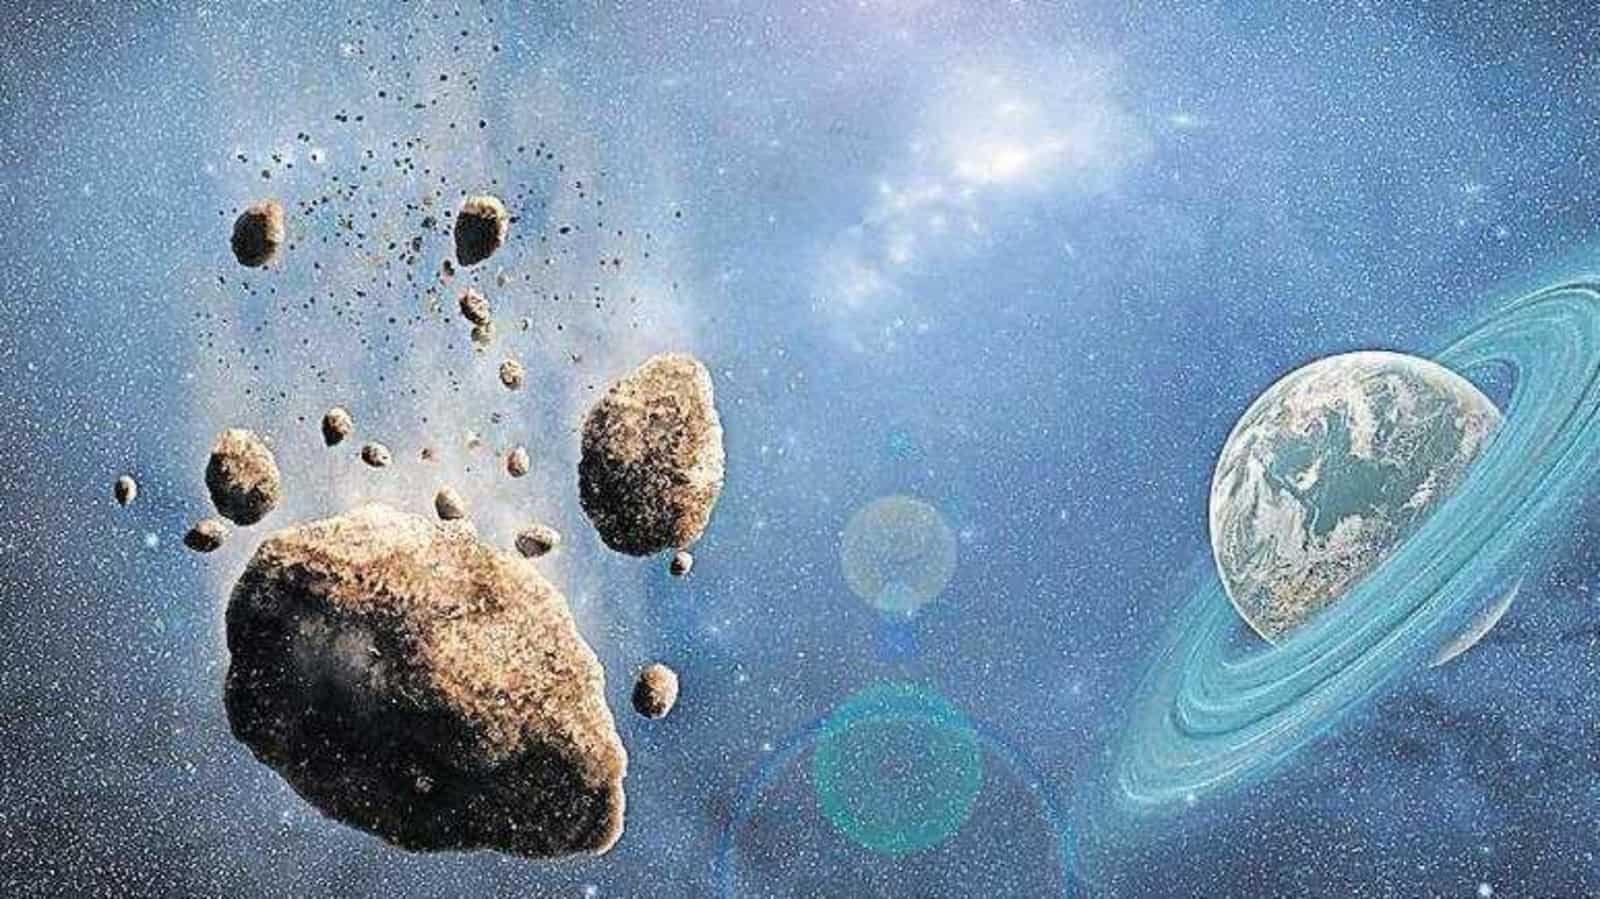 Study: भारत में स्कूली छात्रों ने 18 नए क्षुद्रग्रहों की खोज की,पढ़ें क्या पूरा मामला